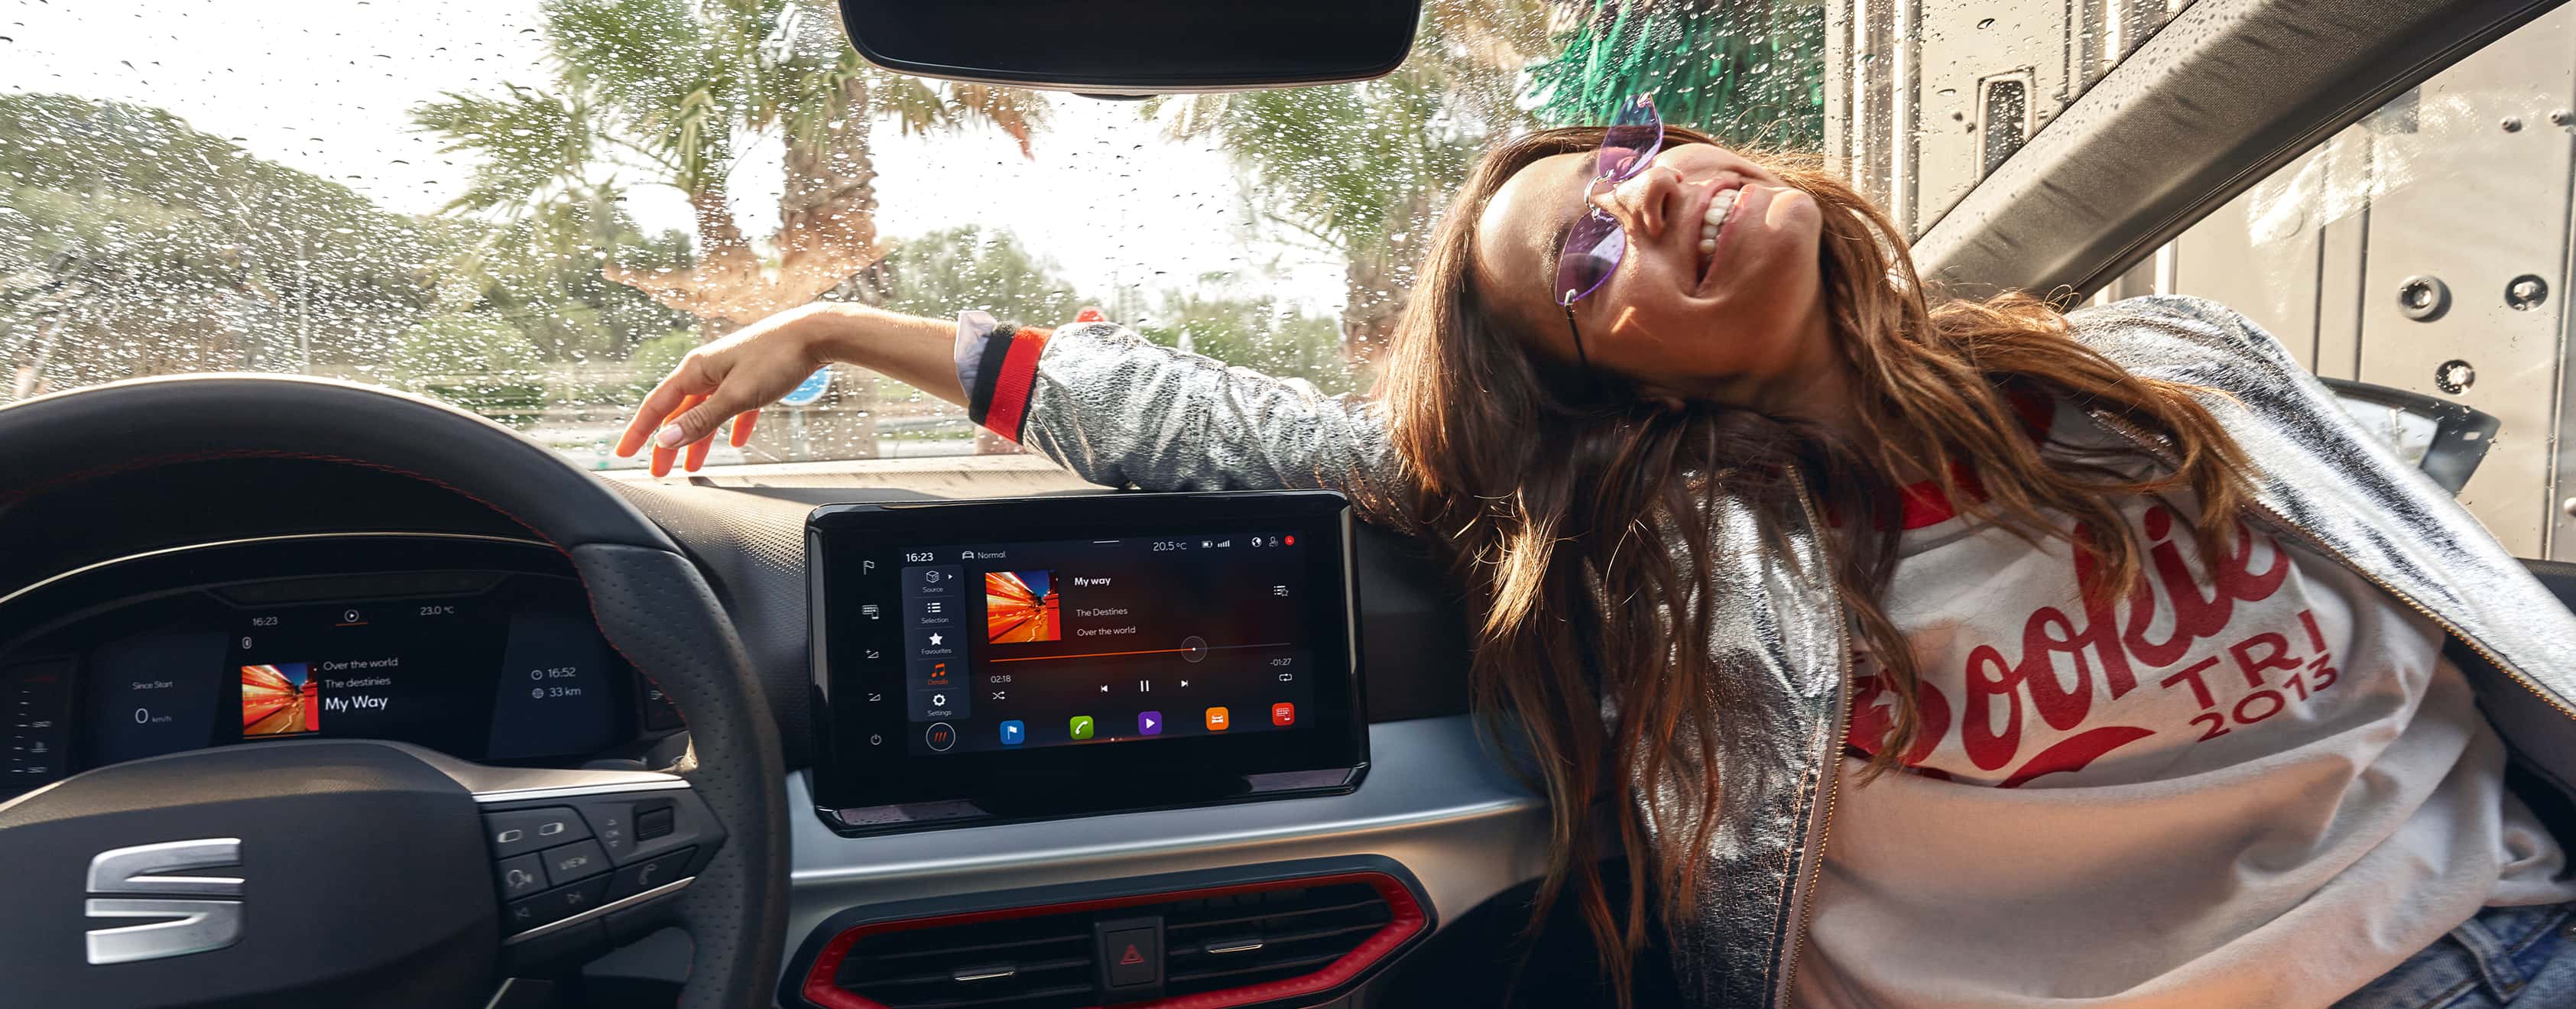 Dona asseguda dins d'un SEAT Ibiza al costat de la pantalla tàctil flotant de 9,2 "